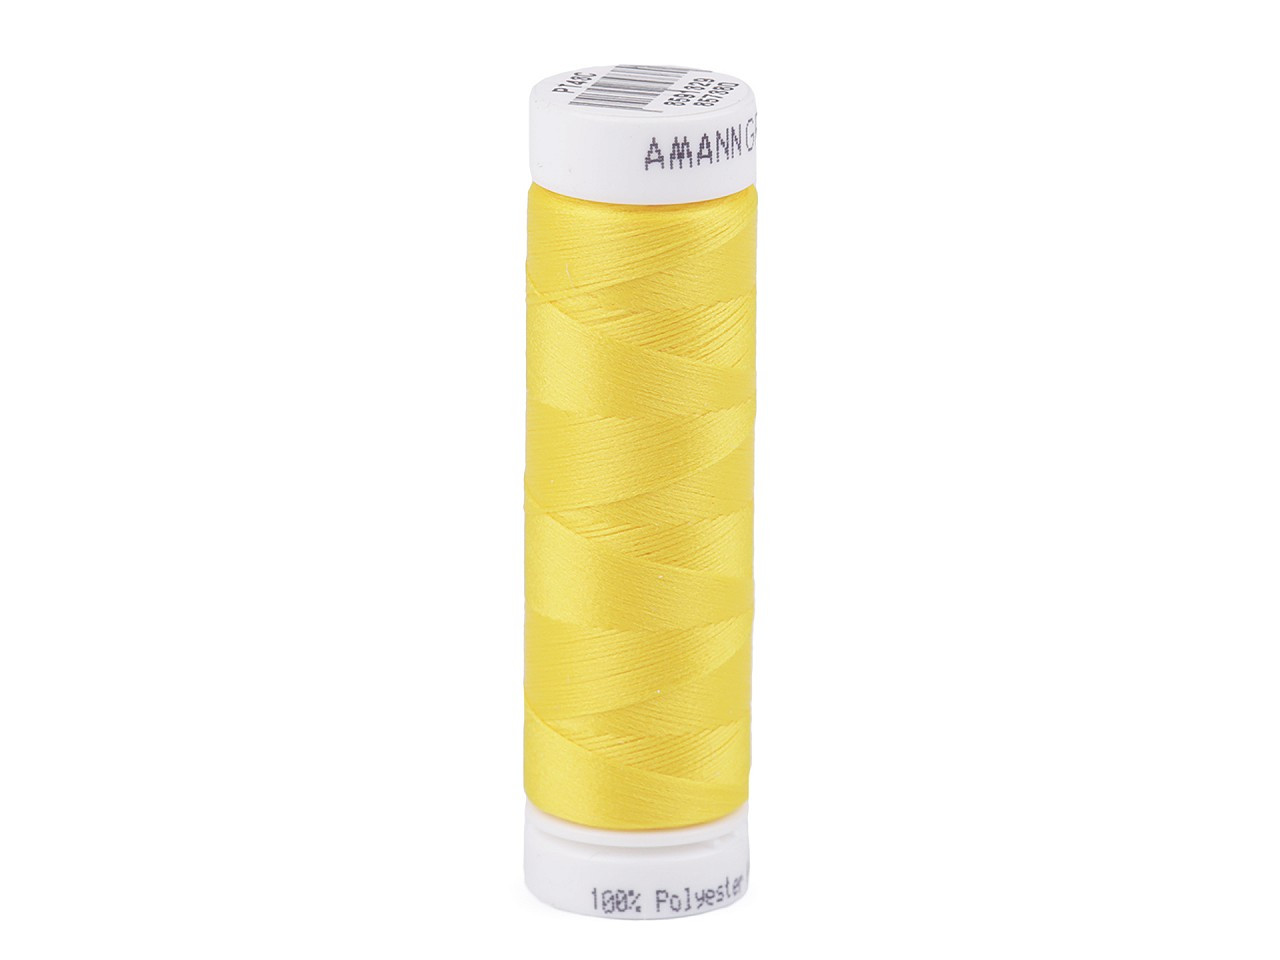 Polyesterové nitě návin 100 m Aspotex 120 Amann, barva 3361 žlutá světlá